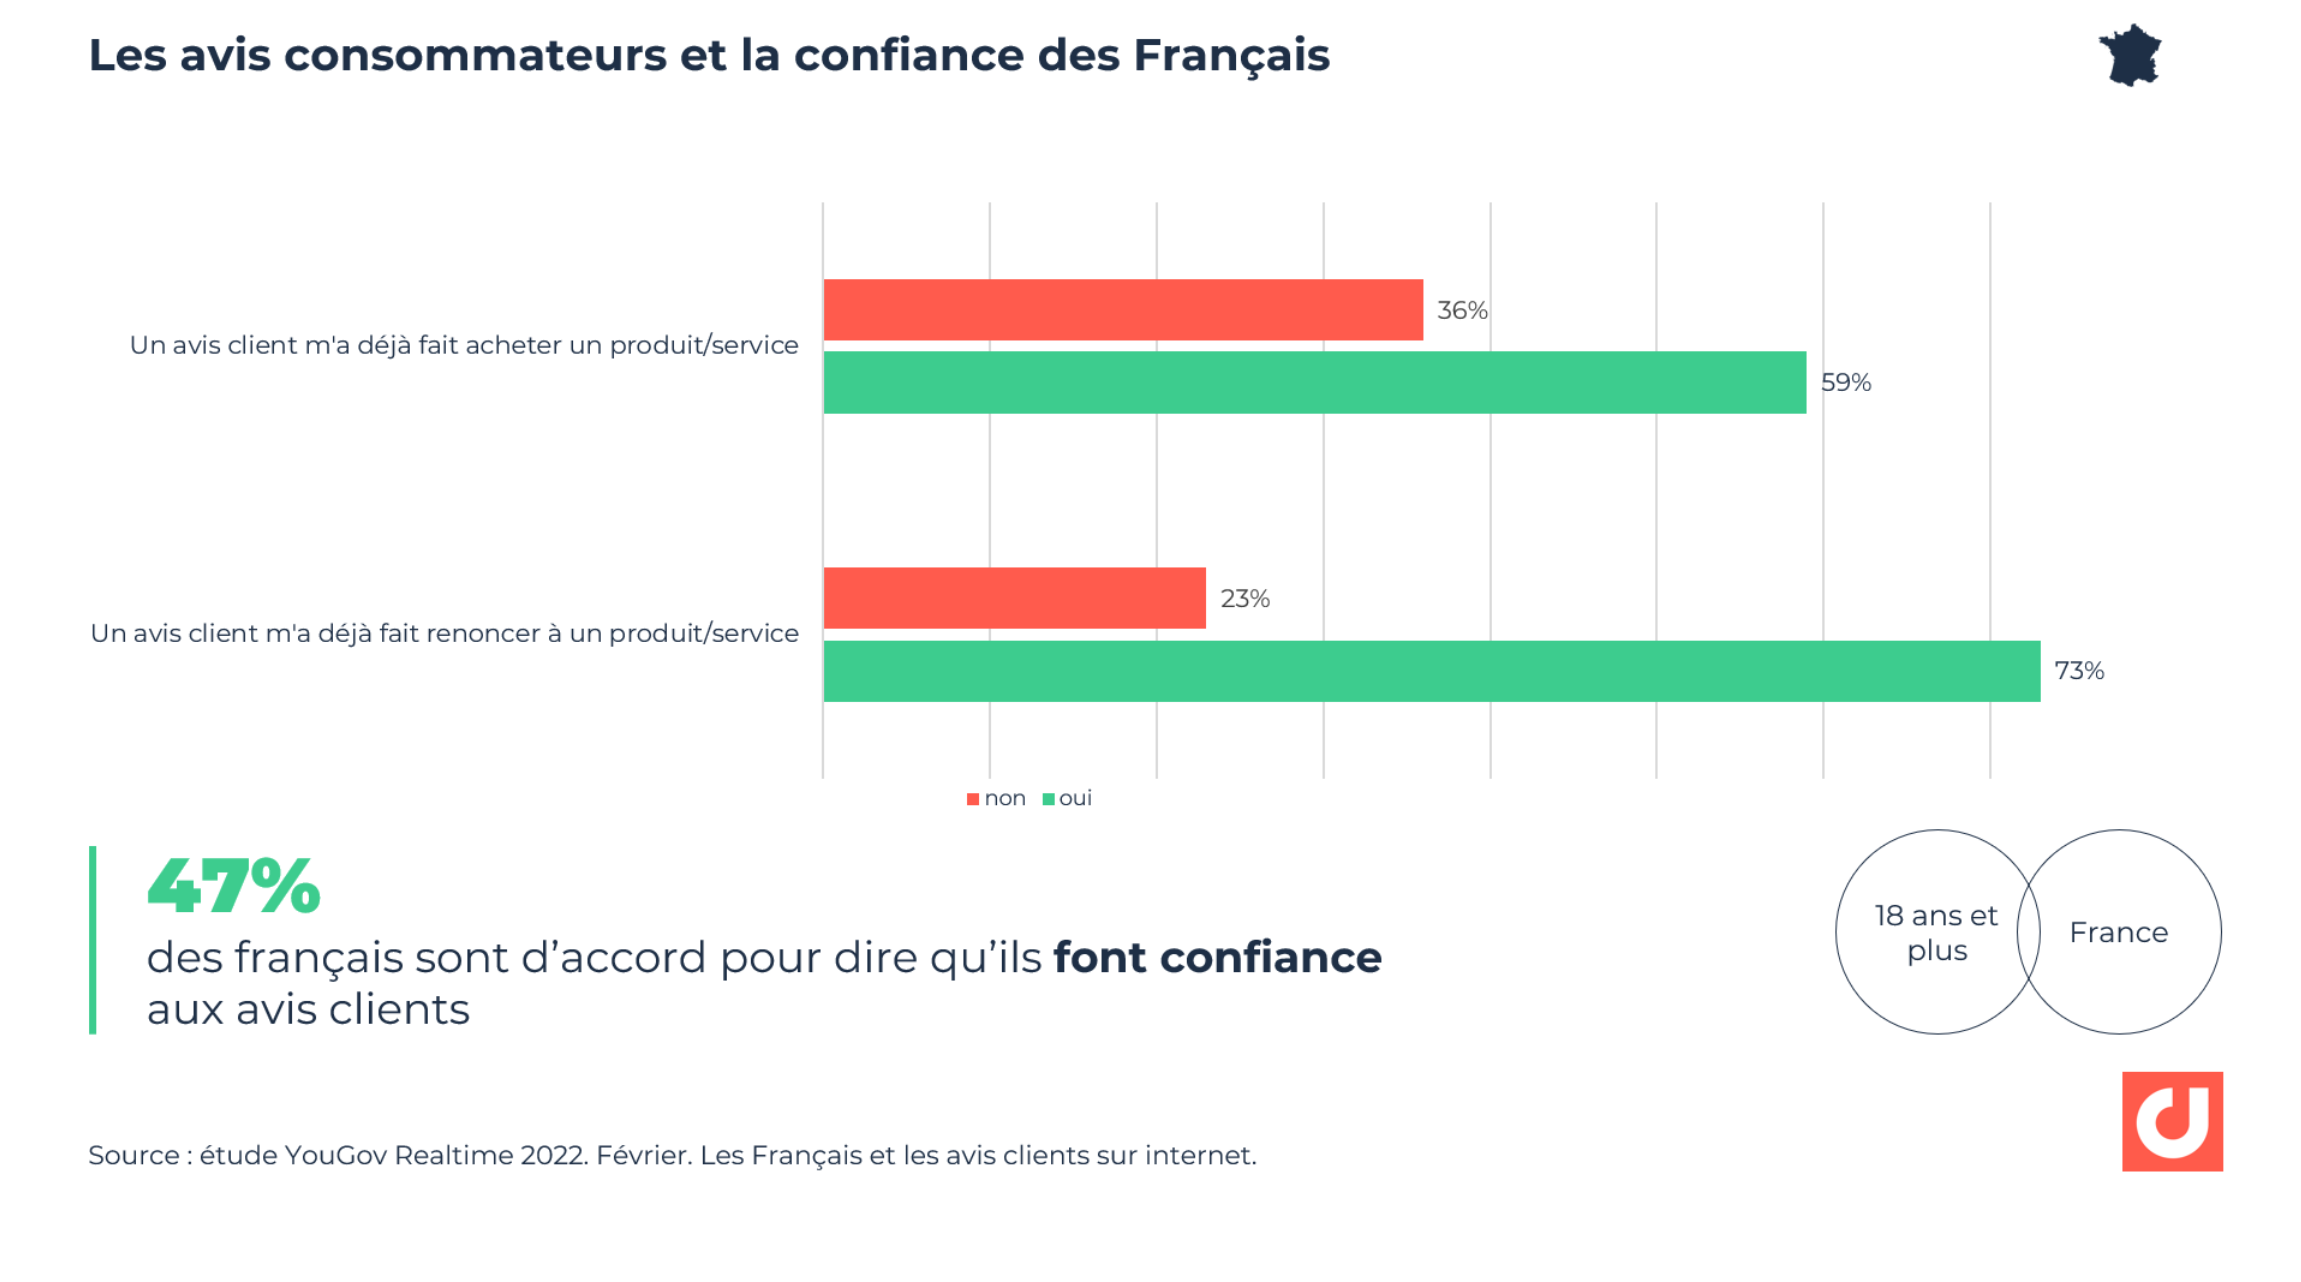 La confiance des Français envers les avis consommateurs